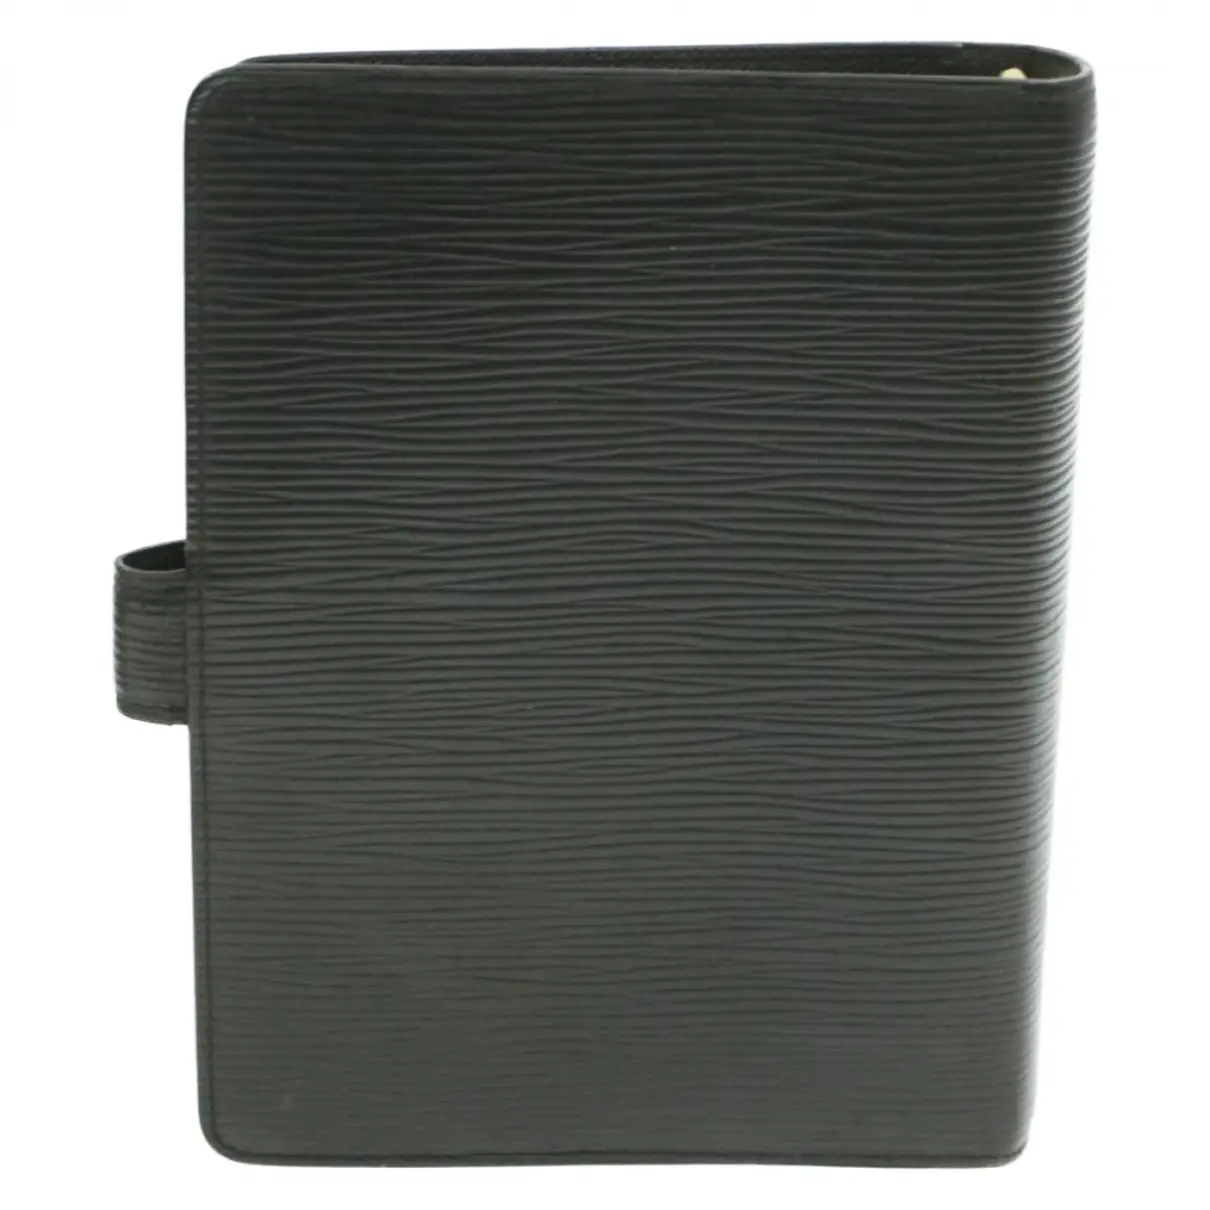 Buy Louis Vuitton Couverture d'agenda PM leather diary online - Vintage